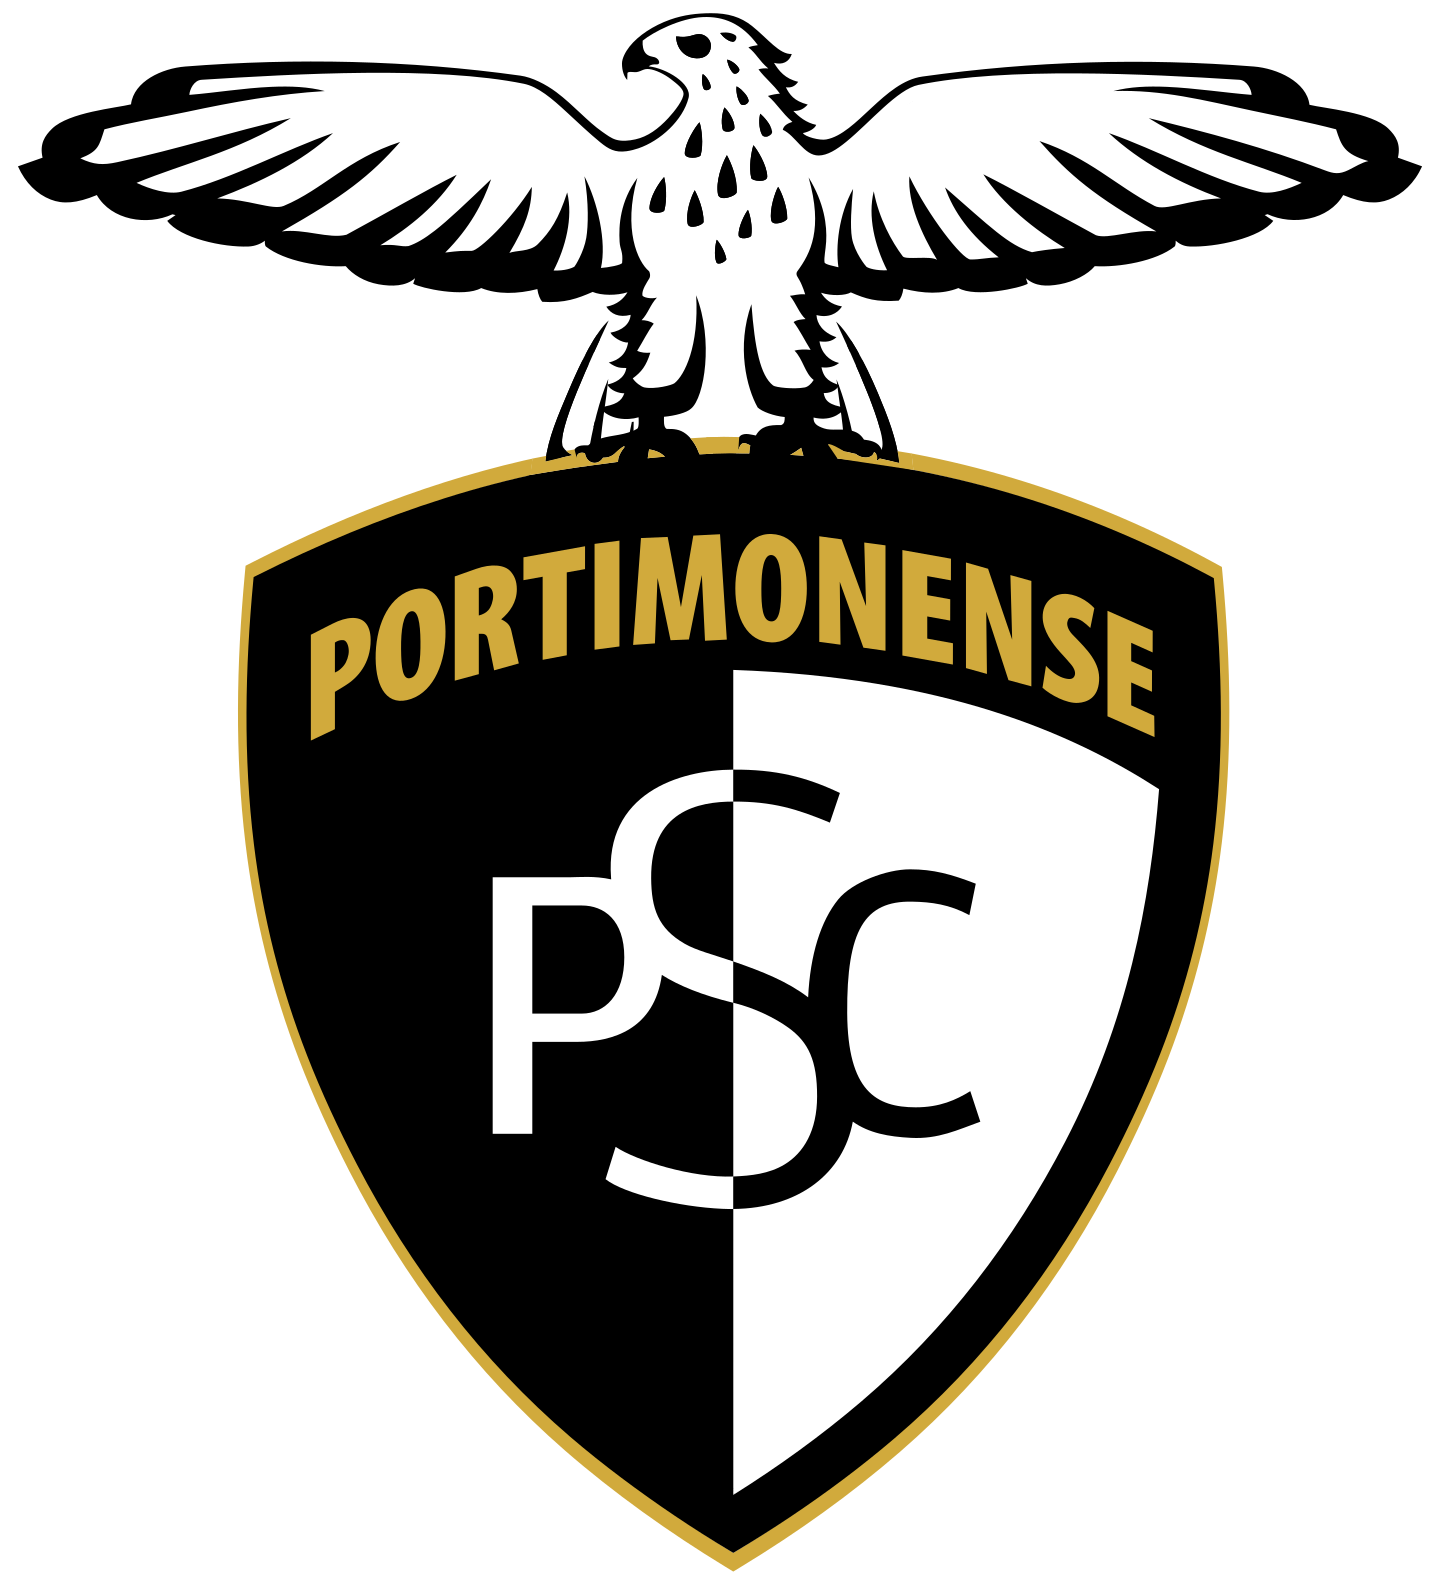 portimonense sc logo 2 - Portimonense SC Logo